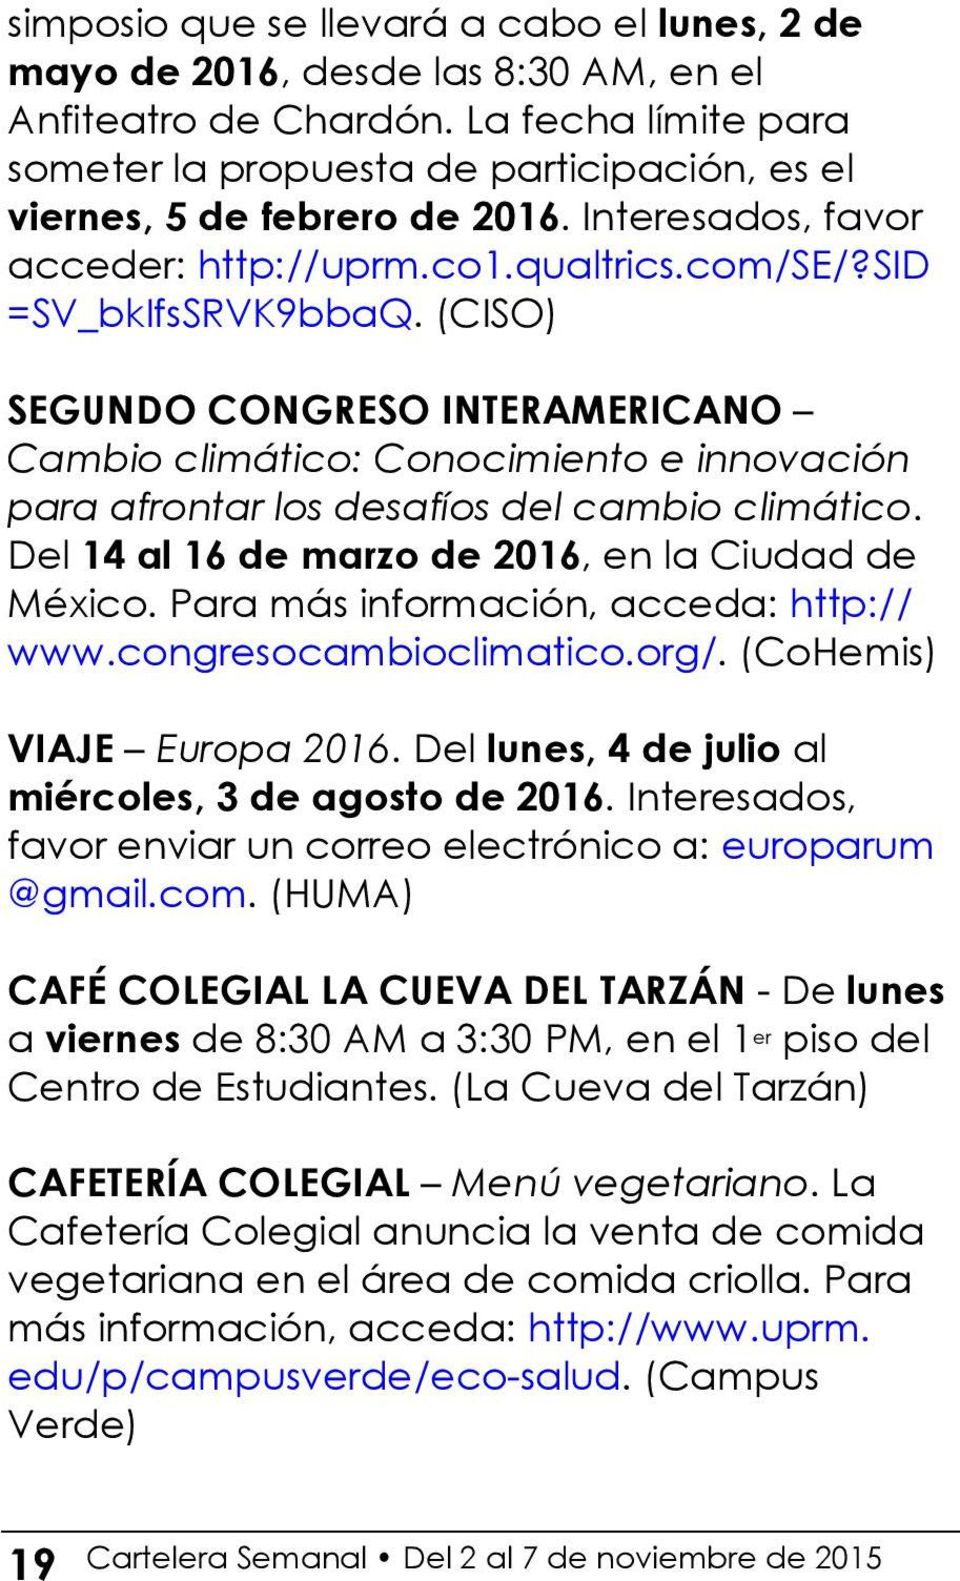 (CISO) SEGUNDO CONGRESO INTERAMERICANO Cambio climático: Conocimiento e innovación para afrontar los desafíos del cambio climático. Del 14 al 16 de marzo de 2016, en la Ciudad de México.